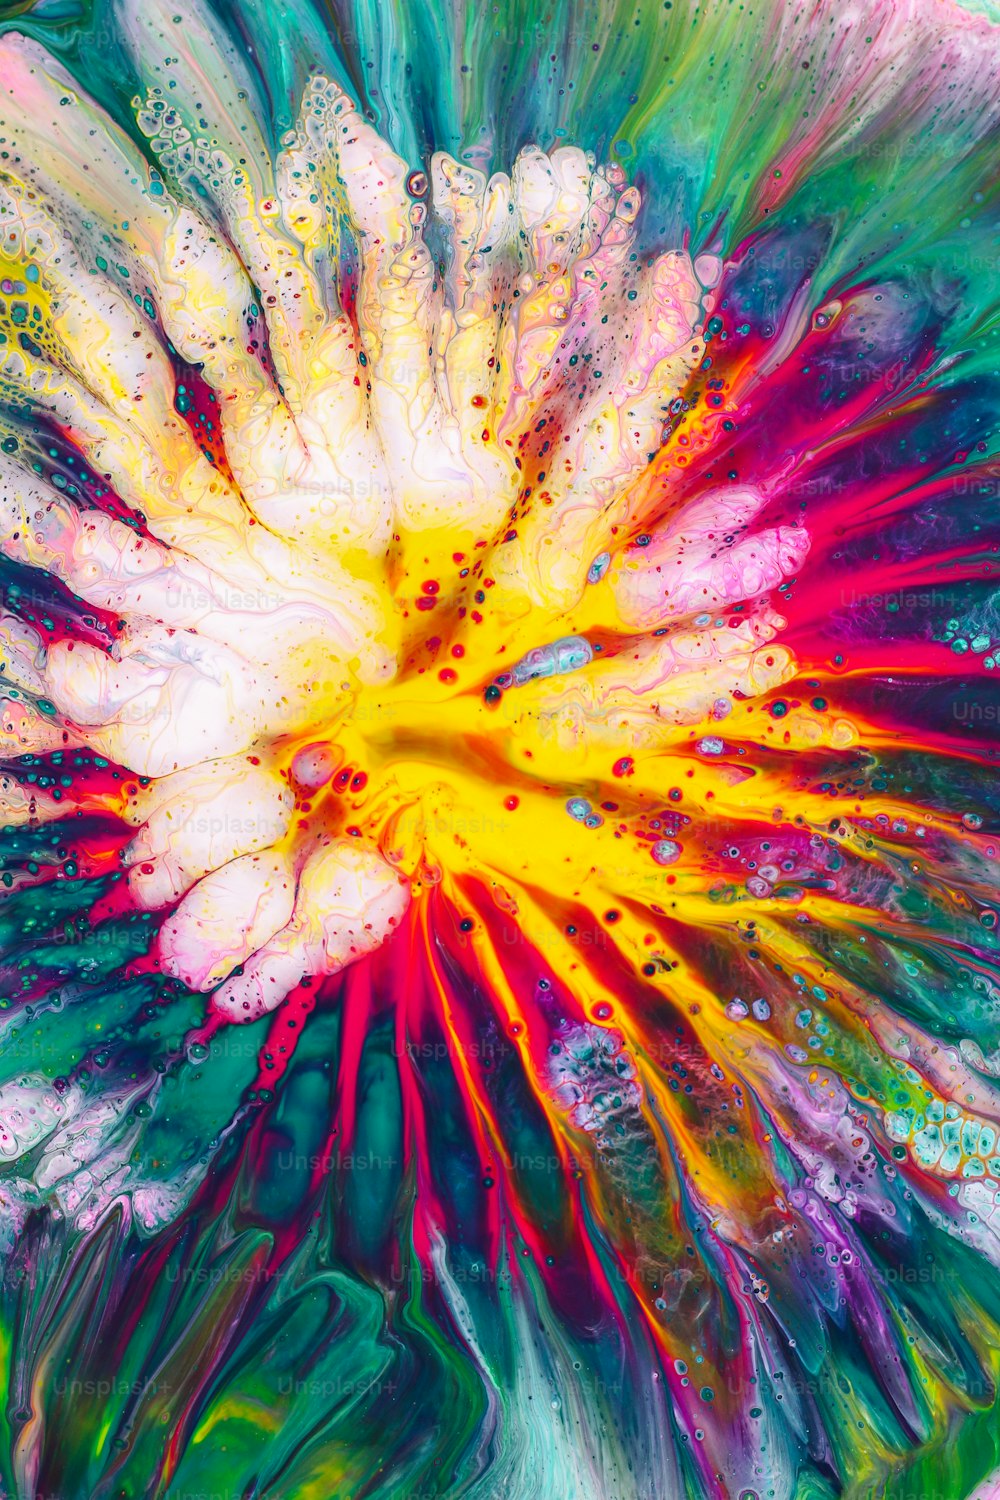 水滴がたくさん入った色とりどりの花